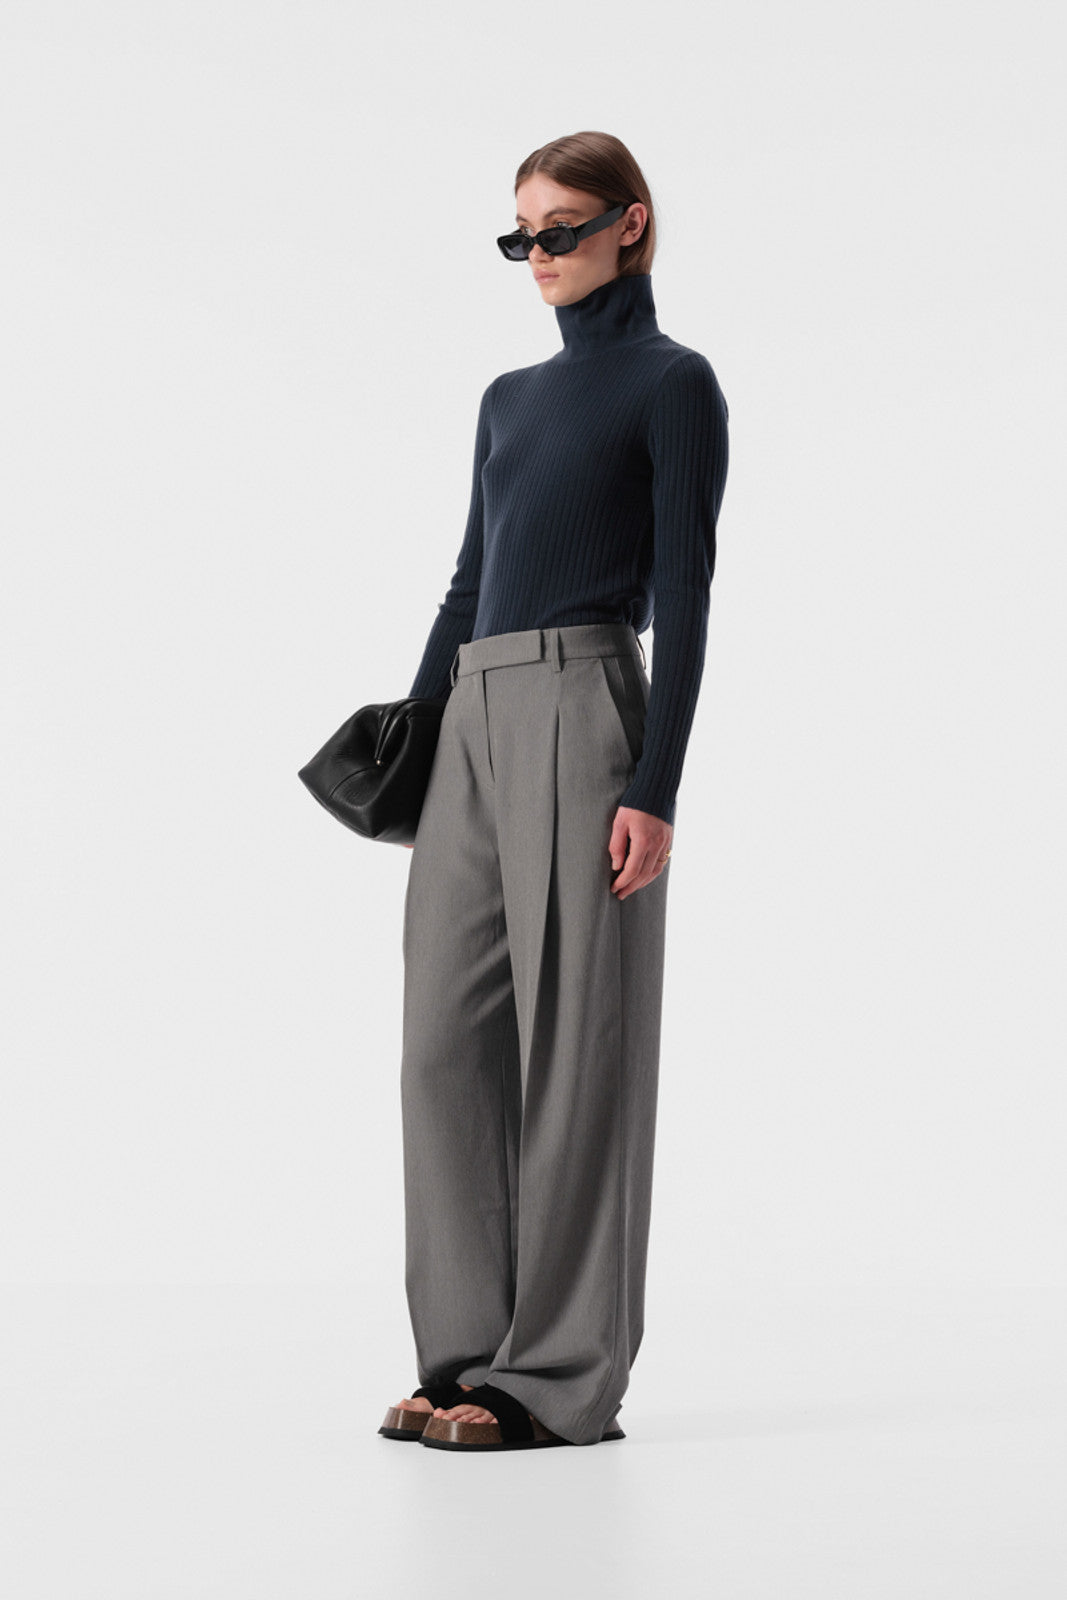 Karin Knit Top - Charcoal grey